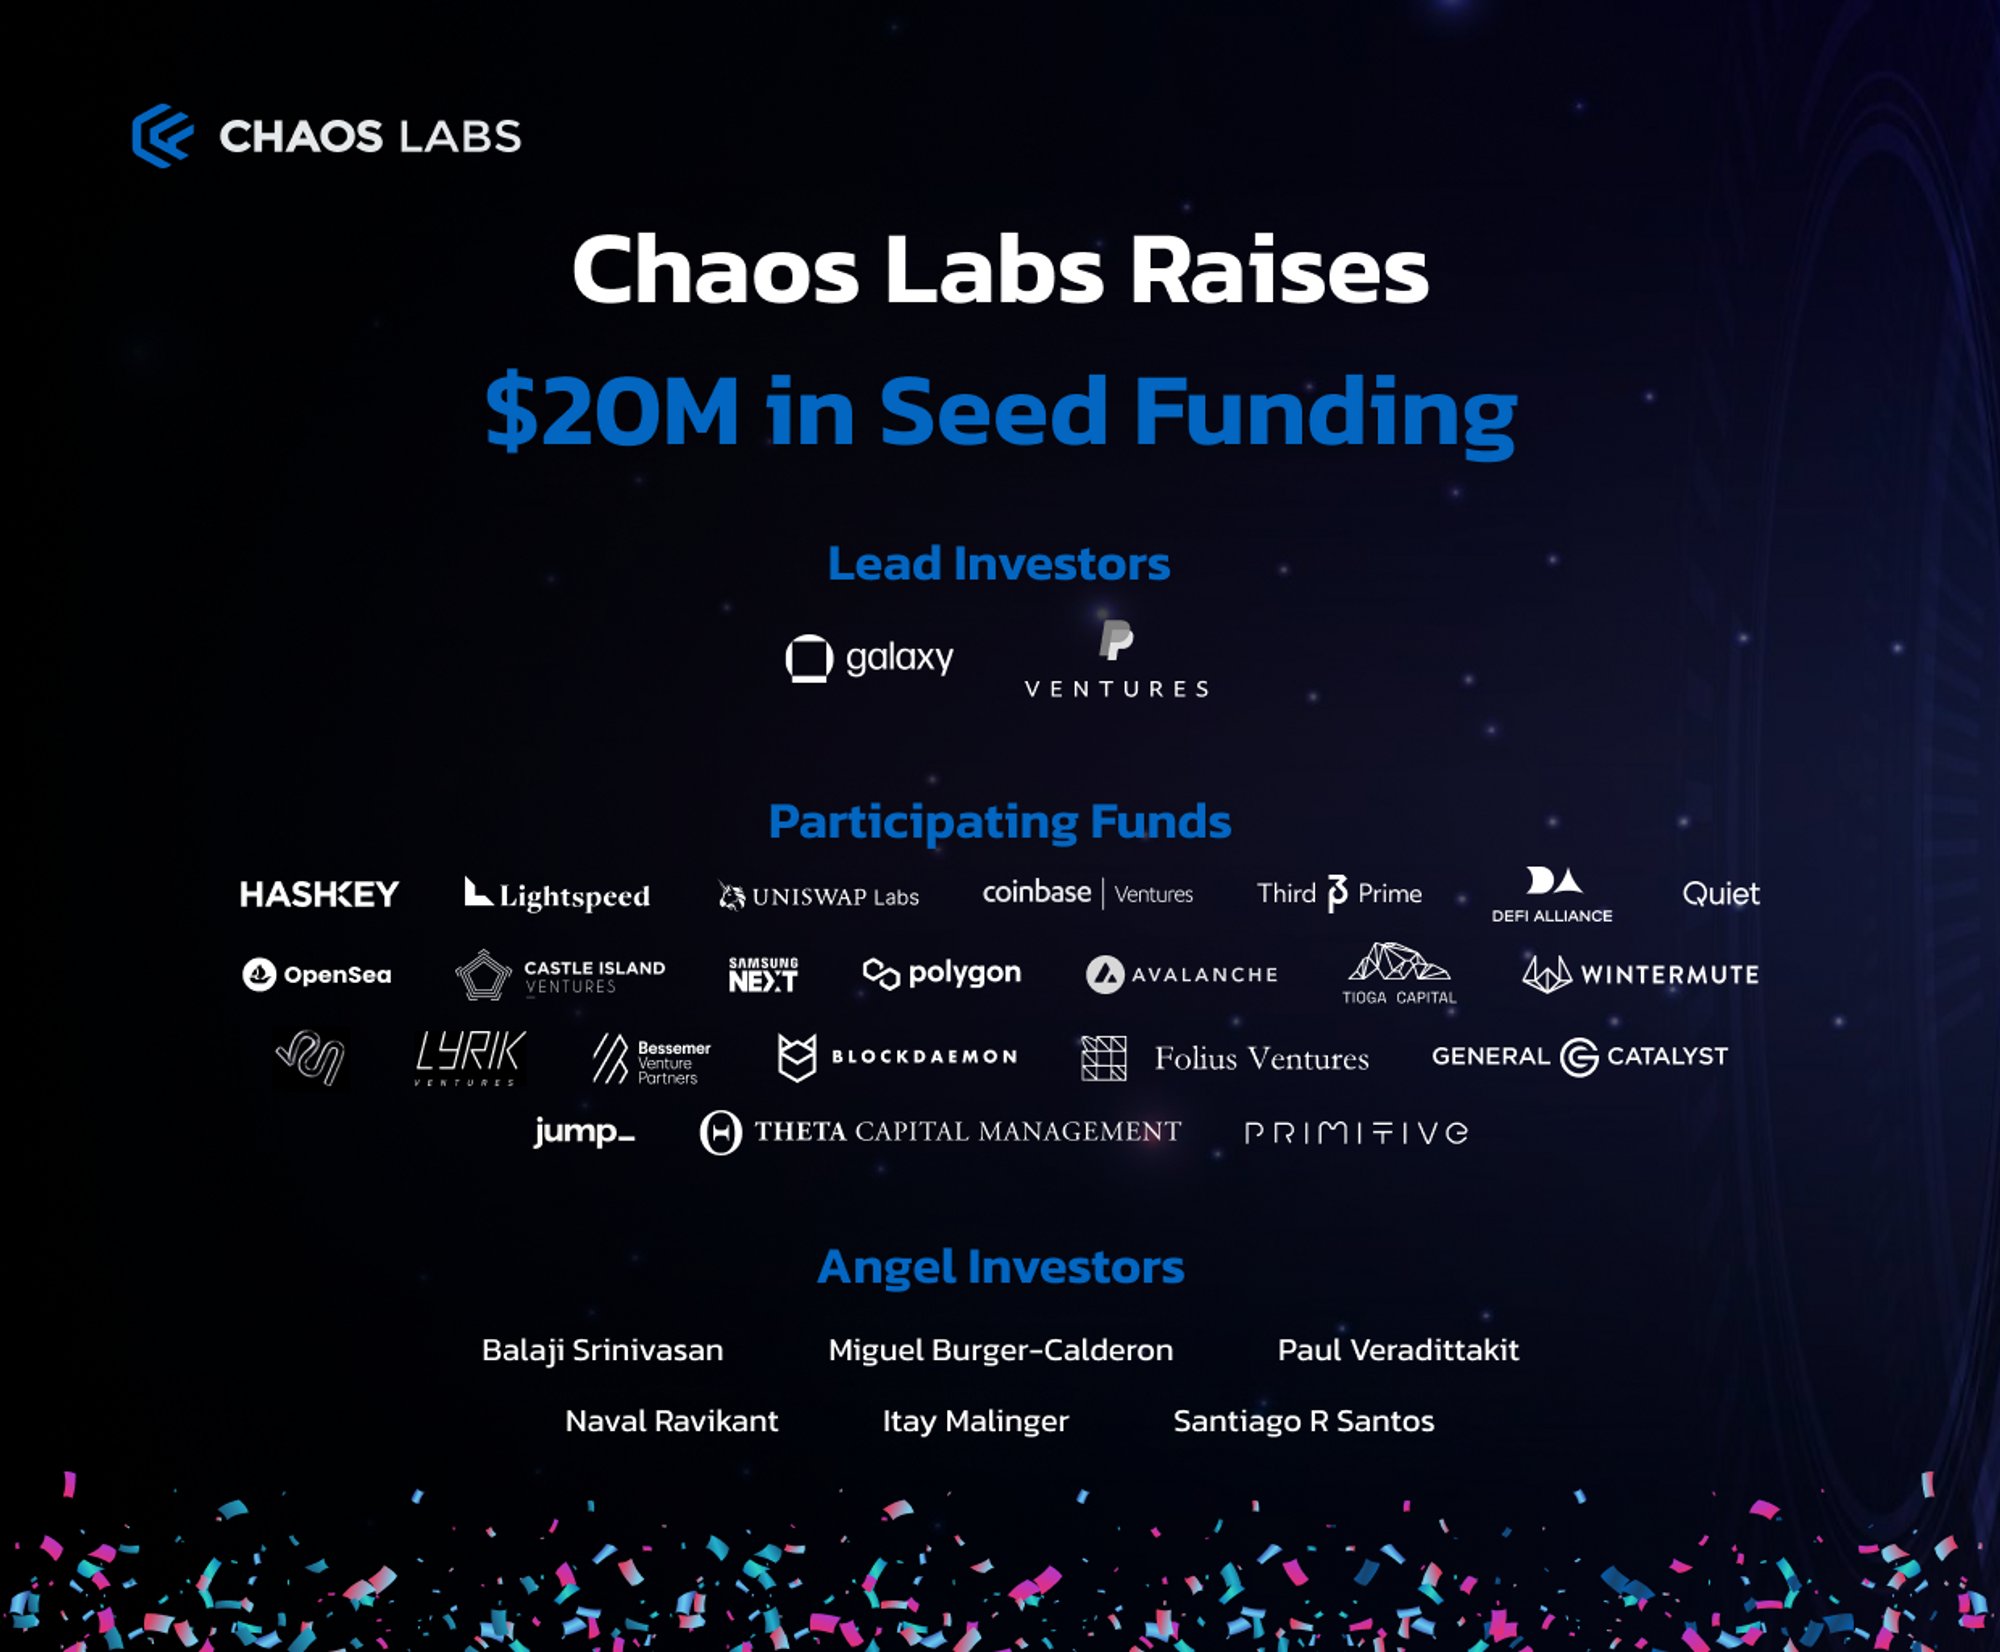 PayPal является одним из руководителей начального финансирования в размере 20 миллионов долларов для оптимизации сетевых рисков Chaos Labs